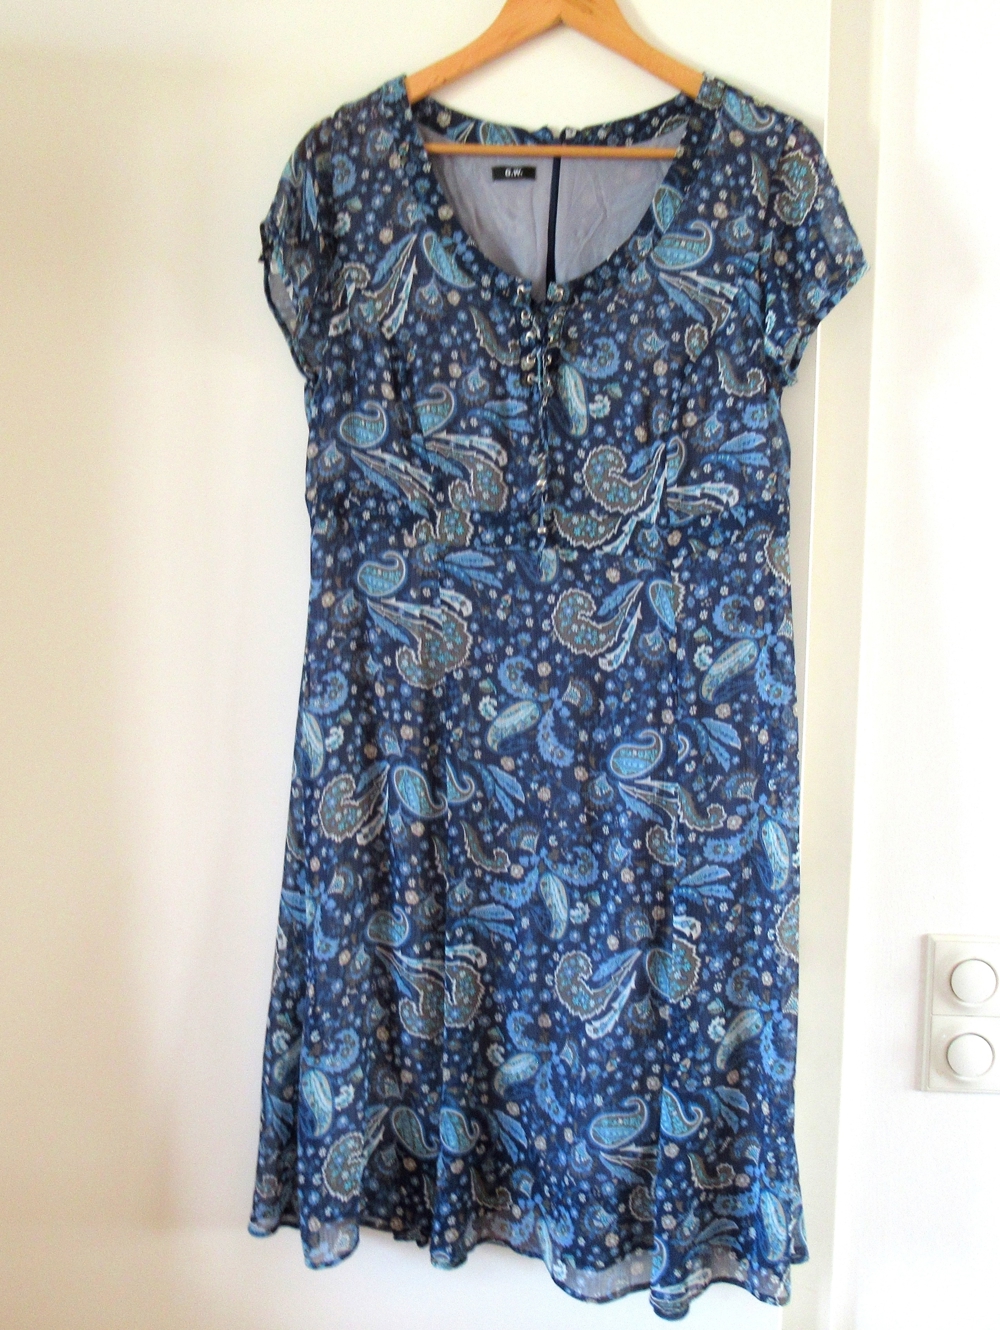 wunderschönes blaugeblümtes Kleid von Gerry Weber Gr. 40